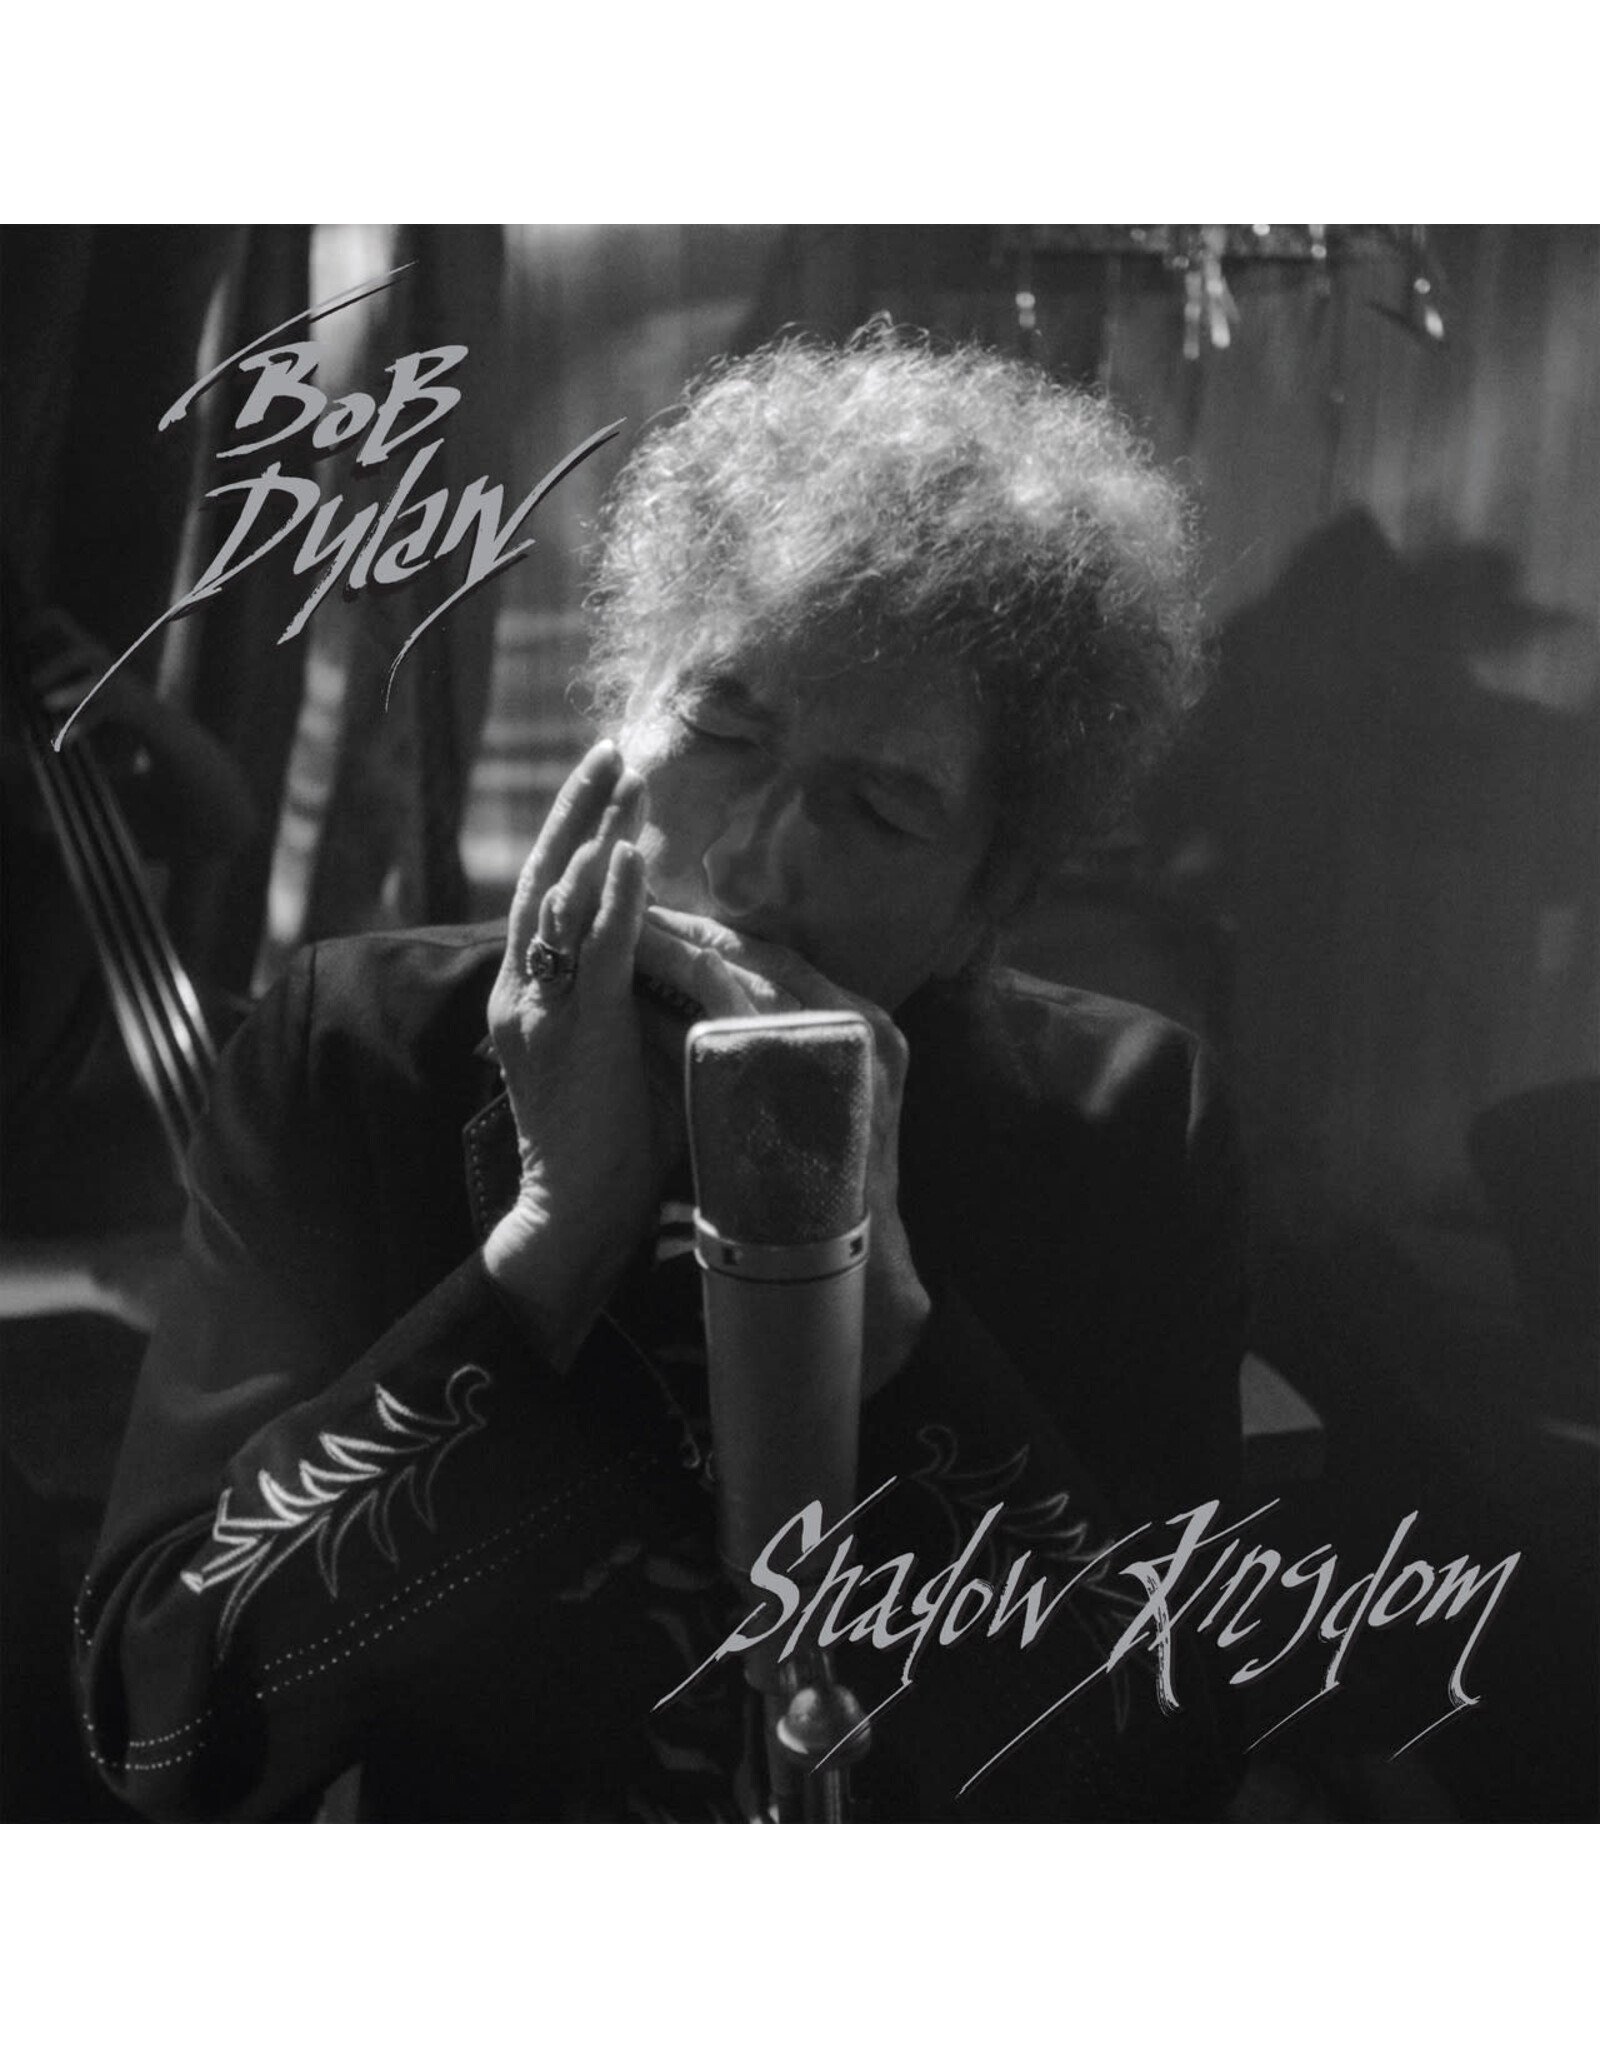 Legacy Dylan, Bob: Shadow Kingdom LP